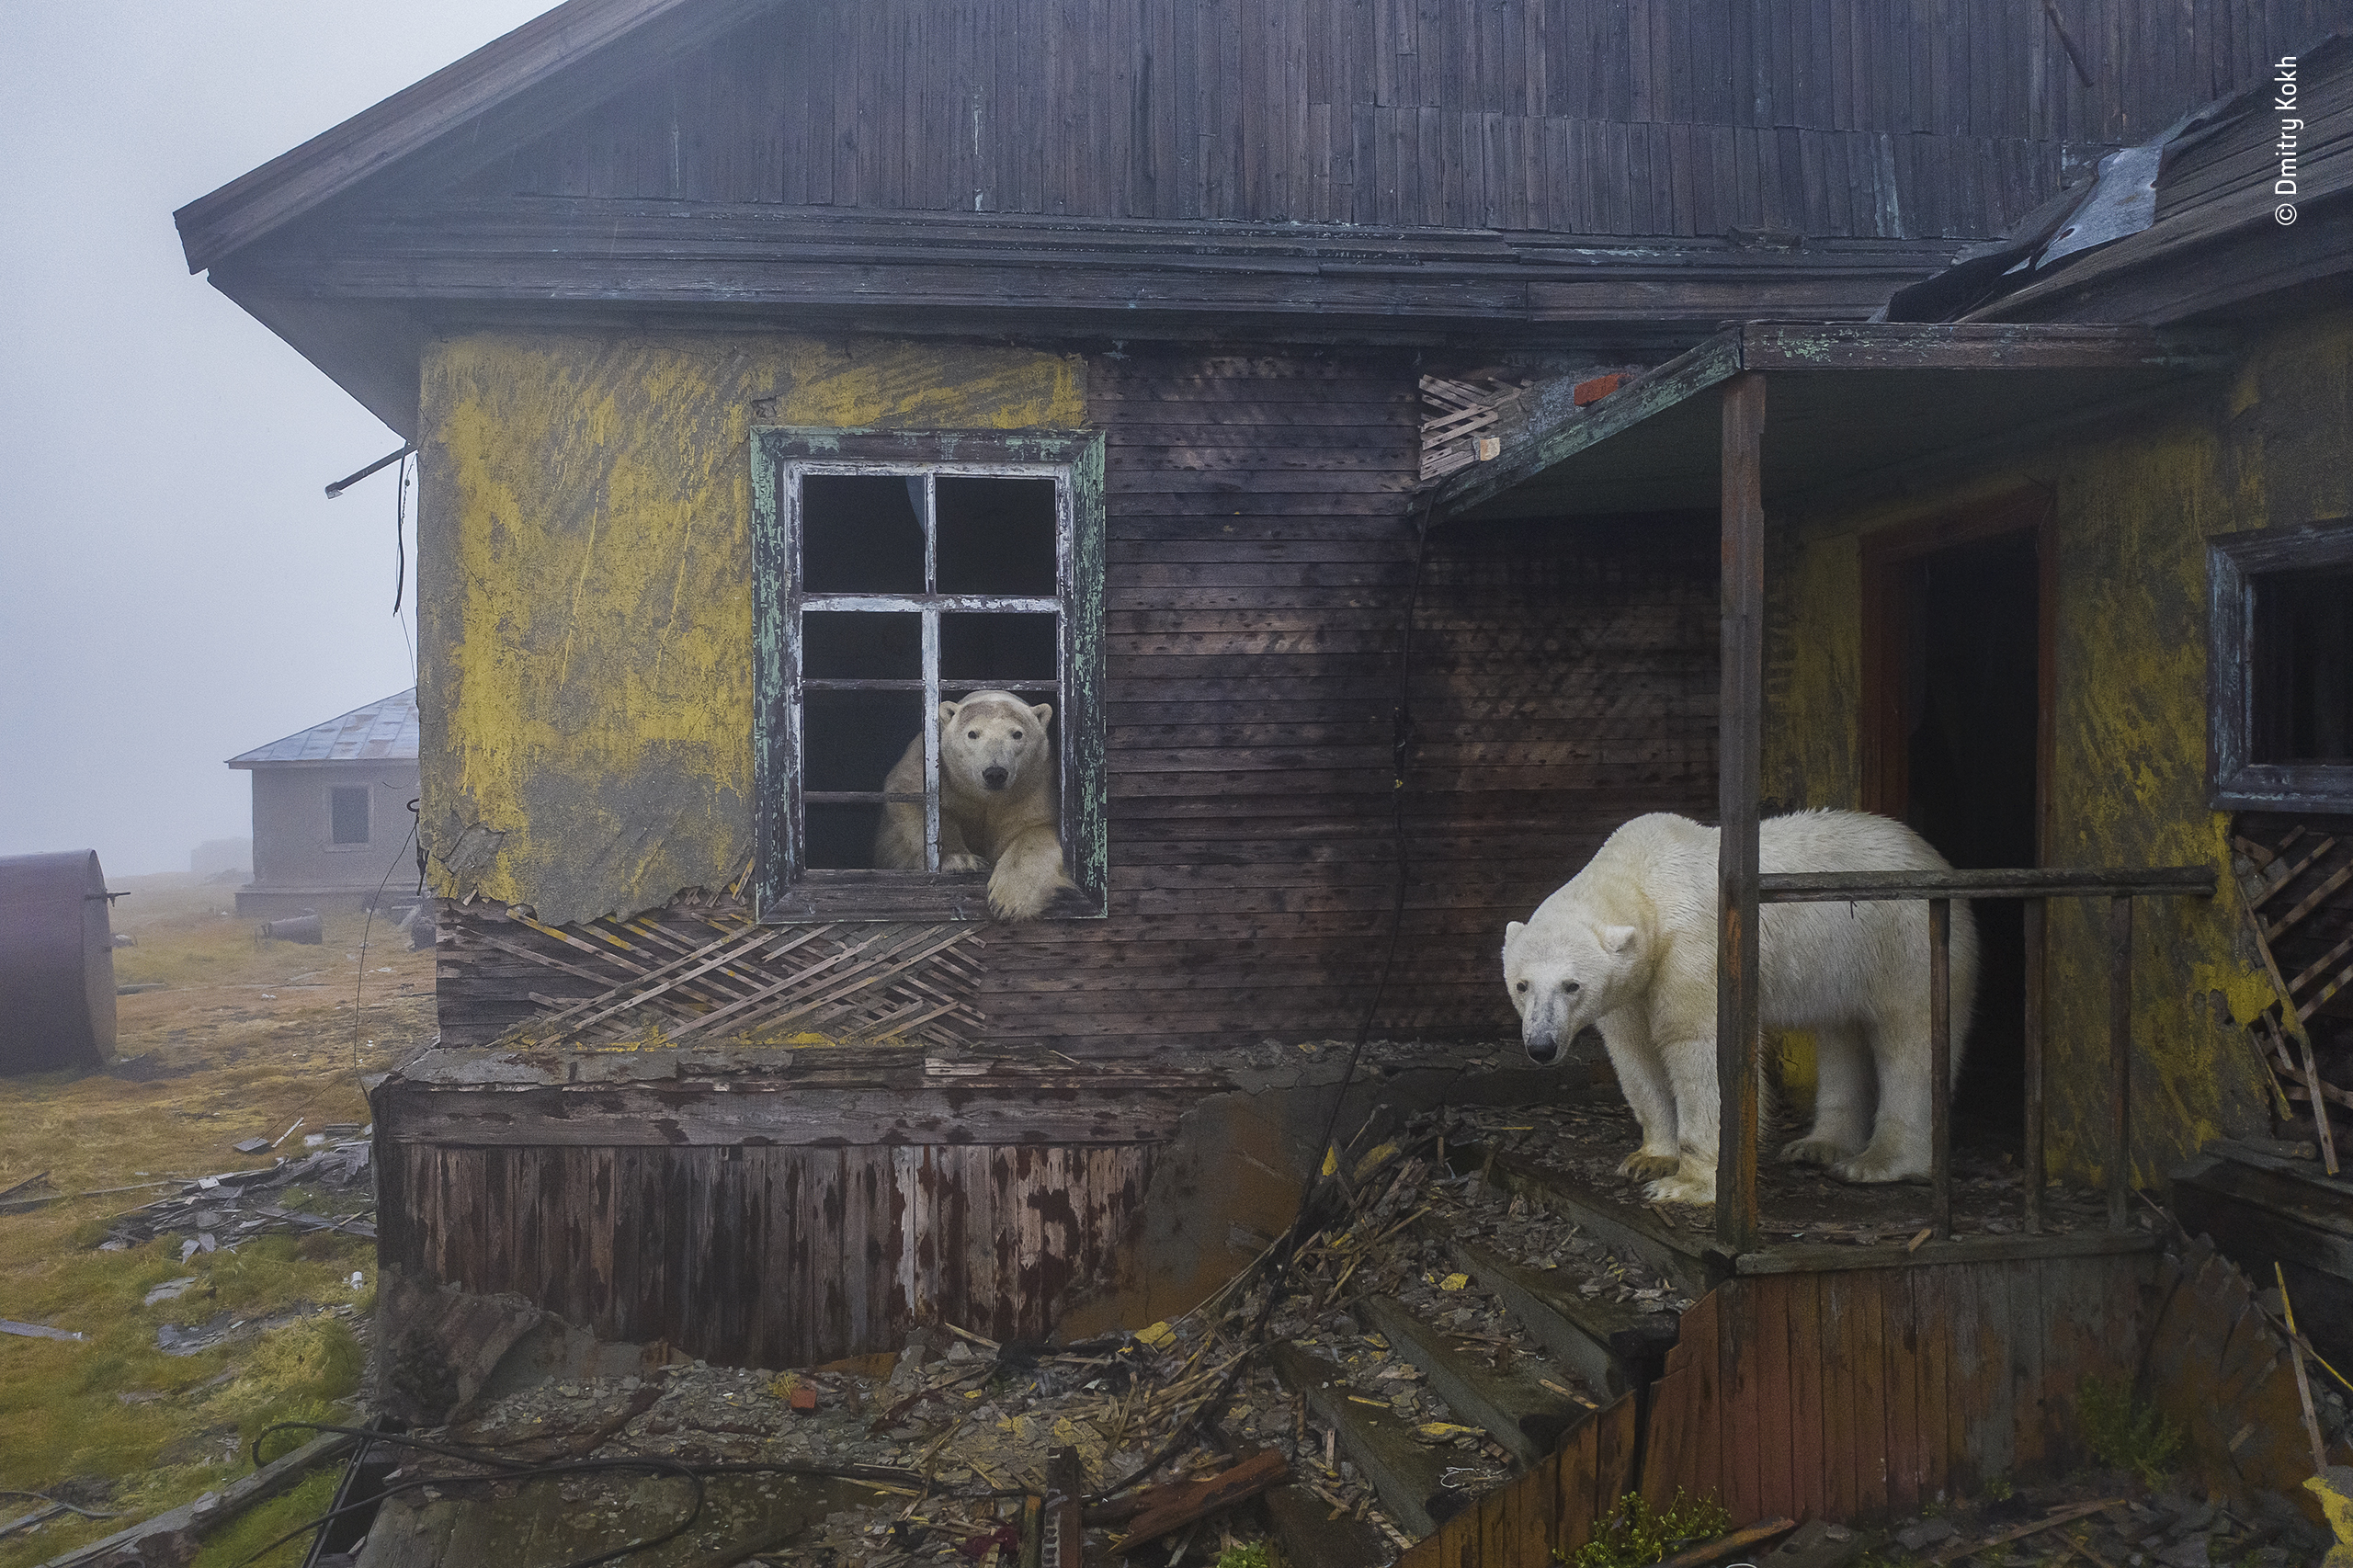 LA CASA DEGLI ORSI © Dmitry Kokh, Russia/Wildlife Photographer of the Year. Vincitore, Urban Wildlife Dmitry Kokh presenta questa scena inquietante di orsi polari avvolti nella nebbia nell'insediamento di Kolyuchin. Su uno yacht, in cerca di riparo da una tempesta, Dmitry ha avvistato gli orsi polari che vagavano tra gli edifici dell'insediamento da lungo tempo deserto. Mentre esploravano ogni finestra e porta, Dmitry ha usato un drone a basso rumore per scattare una foto che evoca un futuro post-apocalittico. Nella regione del Mare dei Chukchi, gli orsi, normalmente solitari, di solito migrano più a nord in estate, seguendo il ritiro del ghiaccio marino da cui dipendono per la caccia alle foche, il loro cibo principale. Se il ghiaccio sciolto rimane vicino alla costa di quest'isola rocciosa, gli orsi a volte vagano incuriositi. Località: Isola di Kolyuchin, Chukotka, Russia. Dettagli tecnici: DJI Mavic 2 Pro + Hasselblad L1D-20c + obiettivo 28mm f2.8; 1/160 sec a f2.8; ISO 640